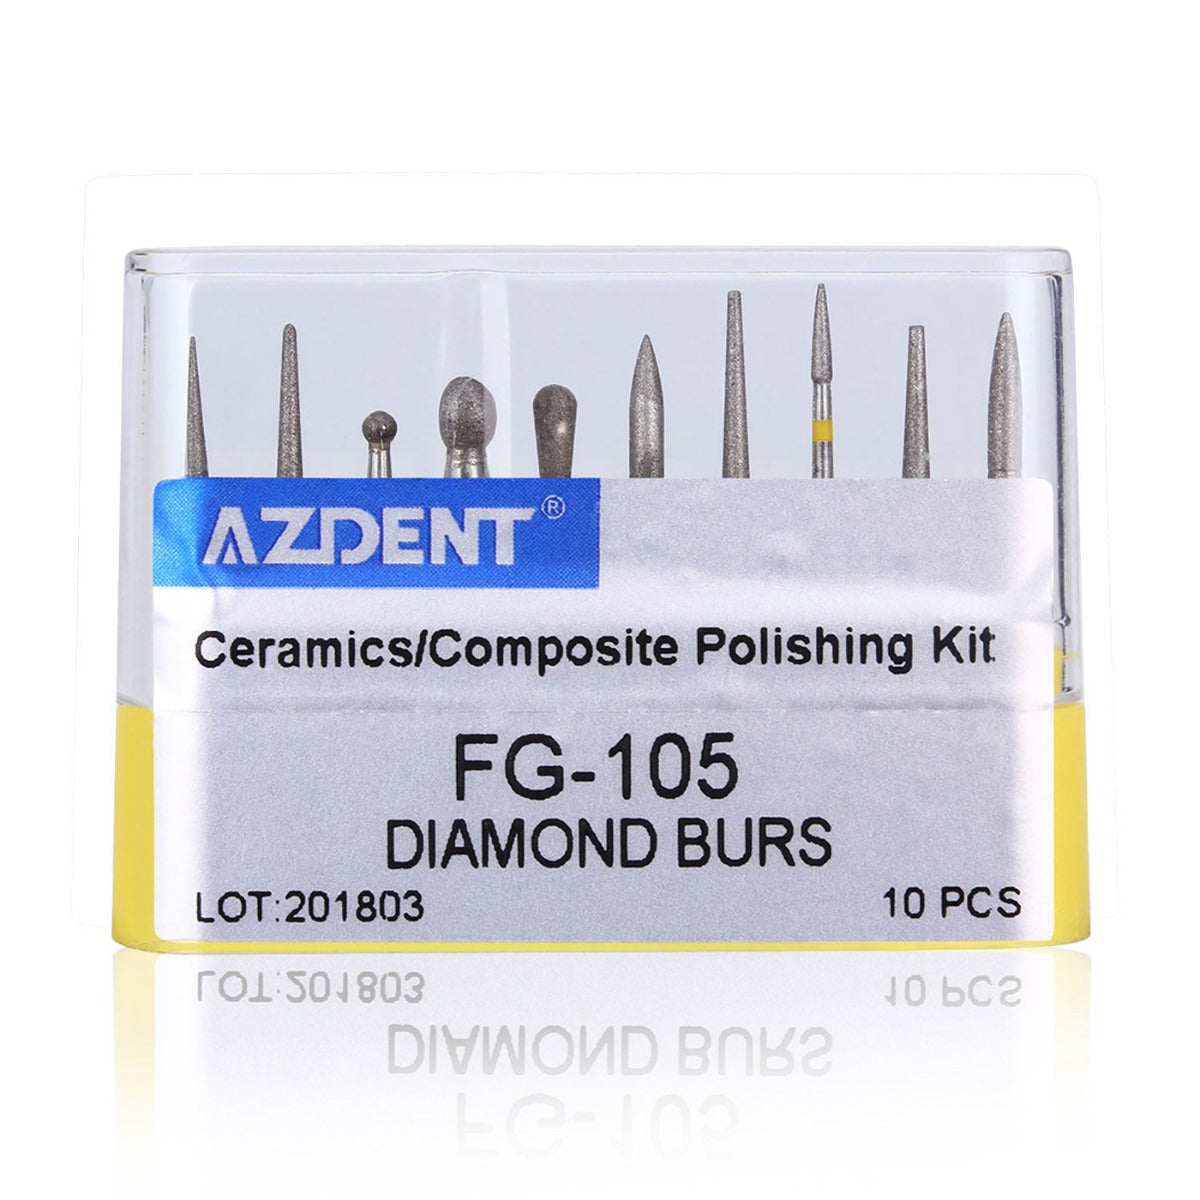 Dental Diamond Bur FG-105 Ceramics/Composite Polishing Kit 10pcs/Kit - pairaydental.com